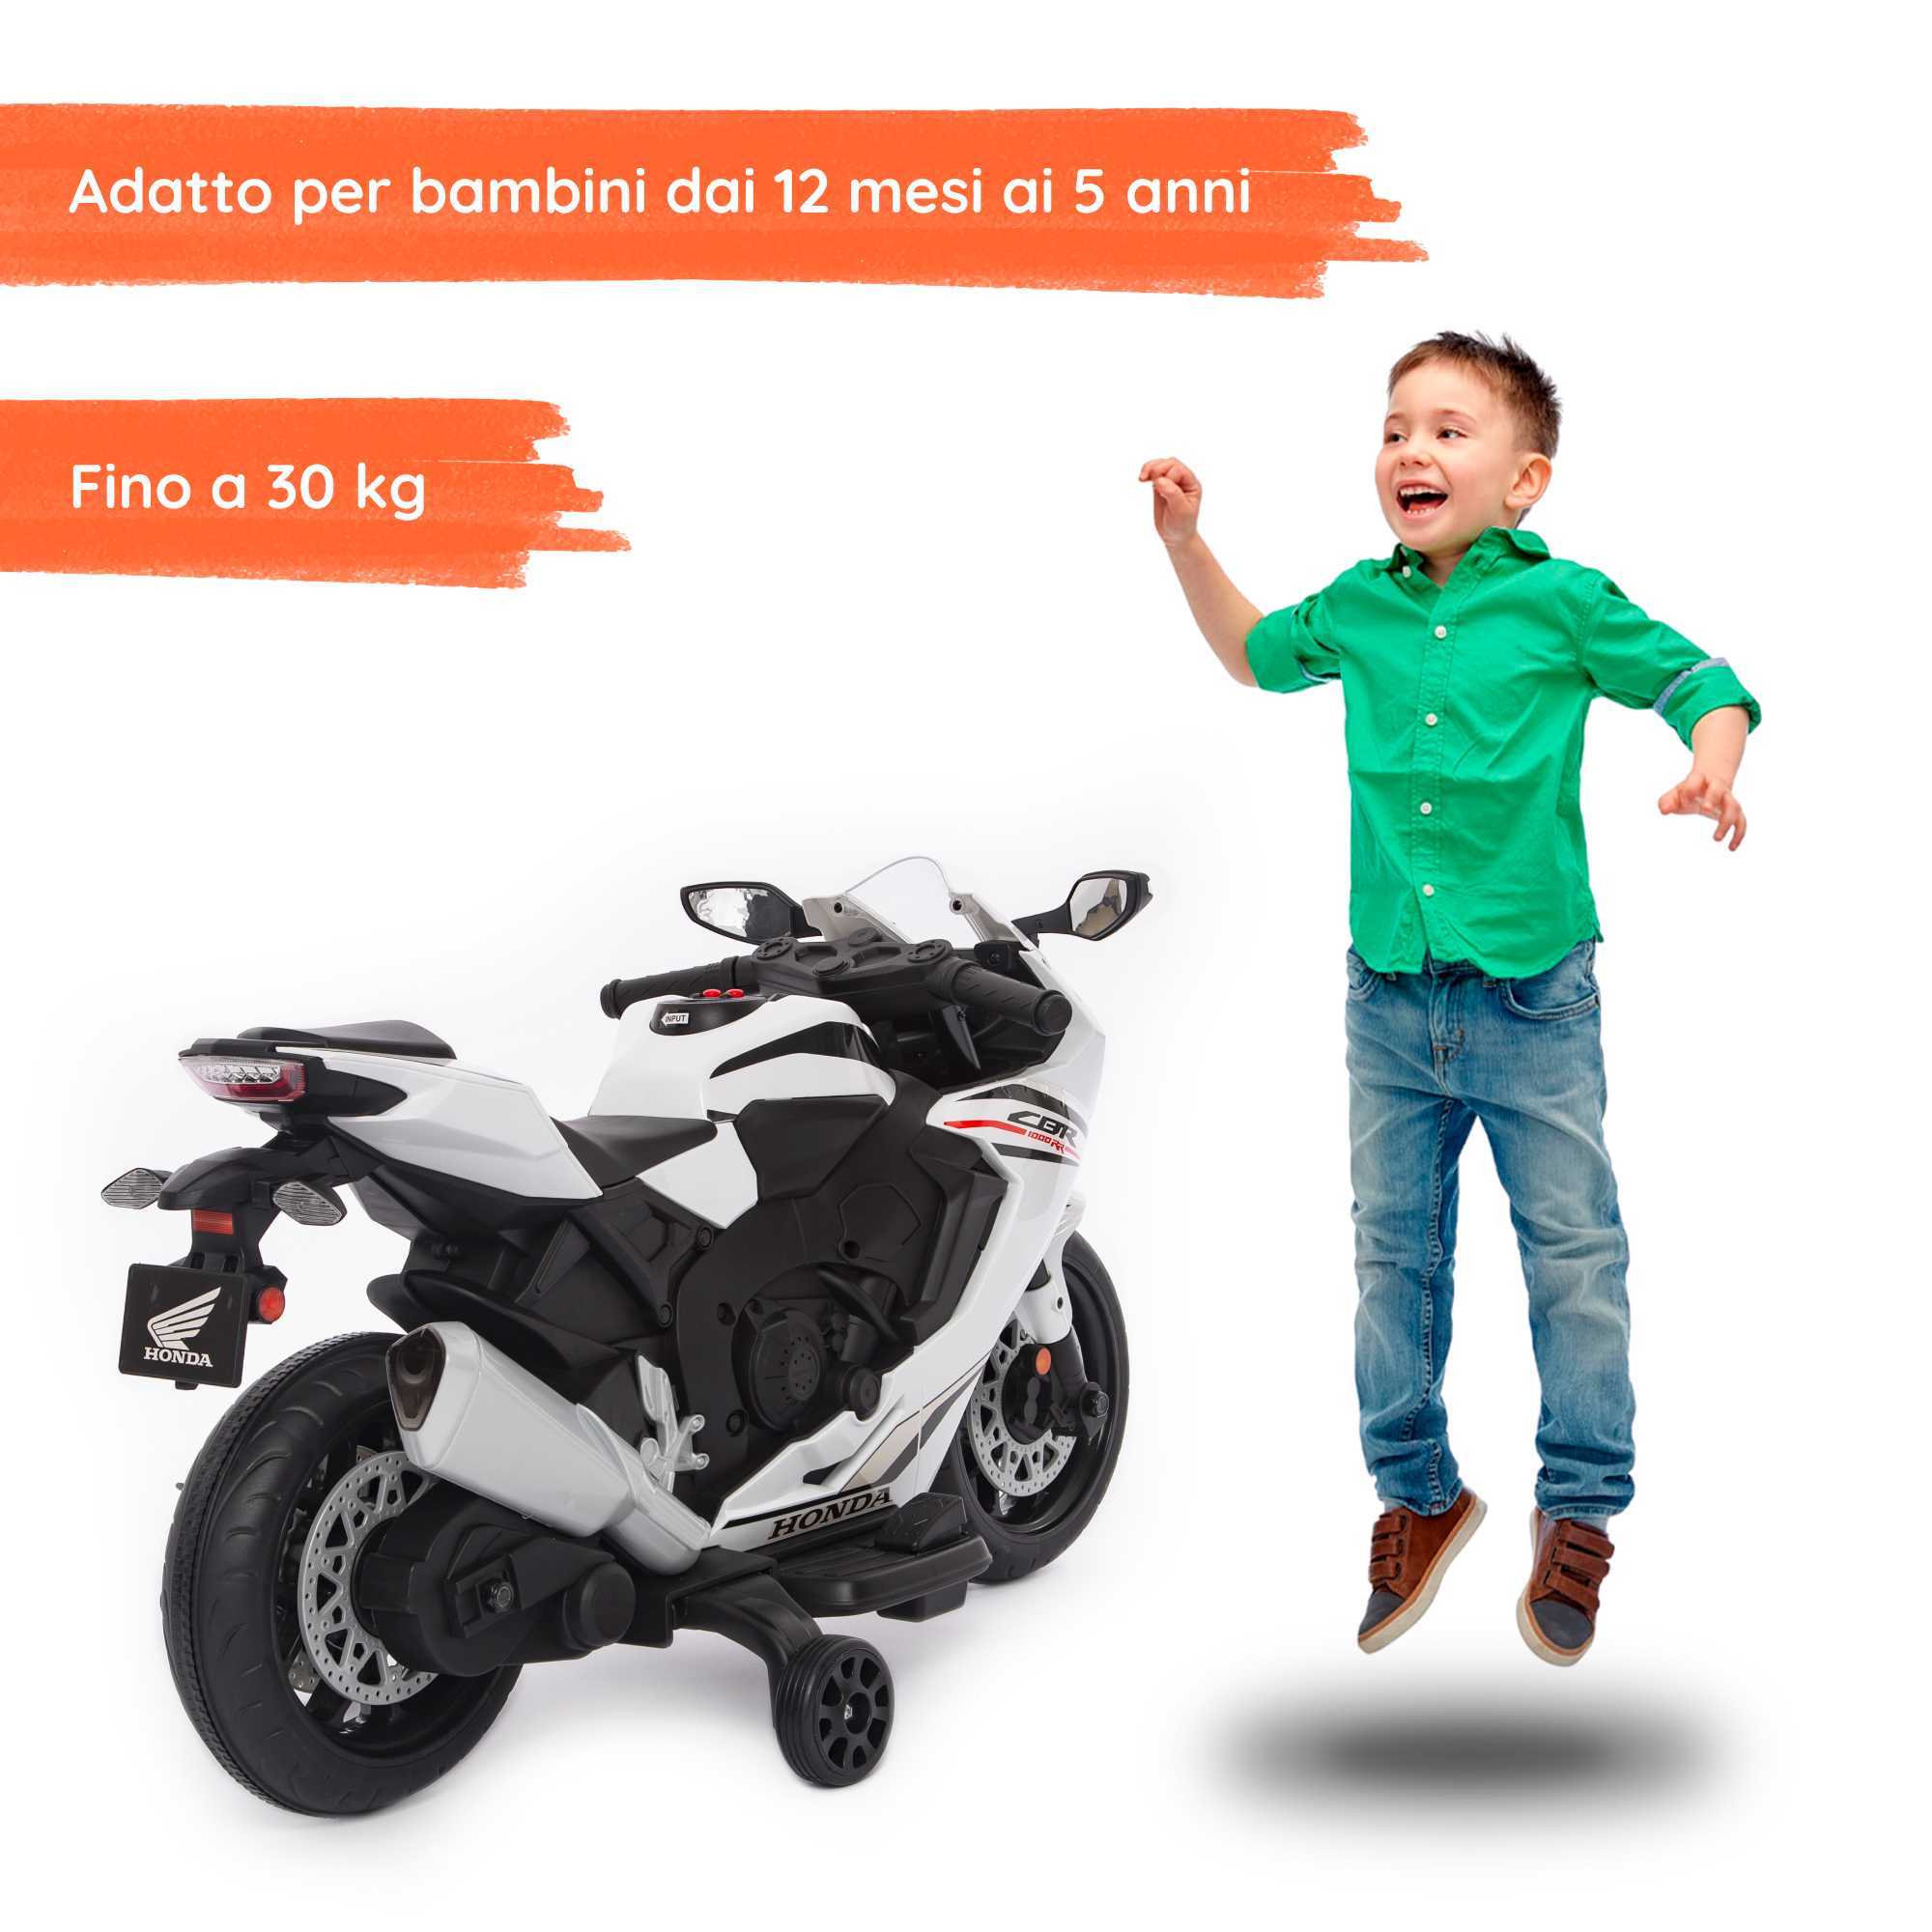 Honda CBR 1000 RR elettrica per bambini con bambino